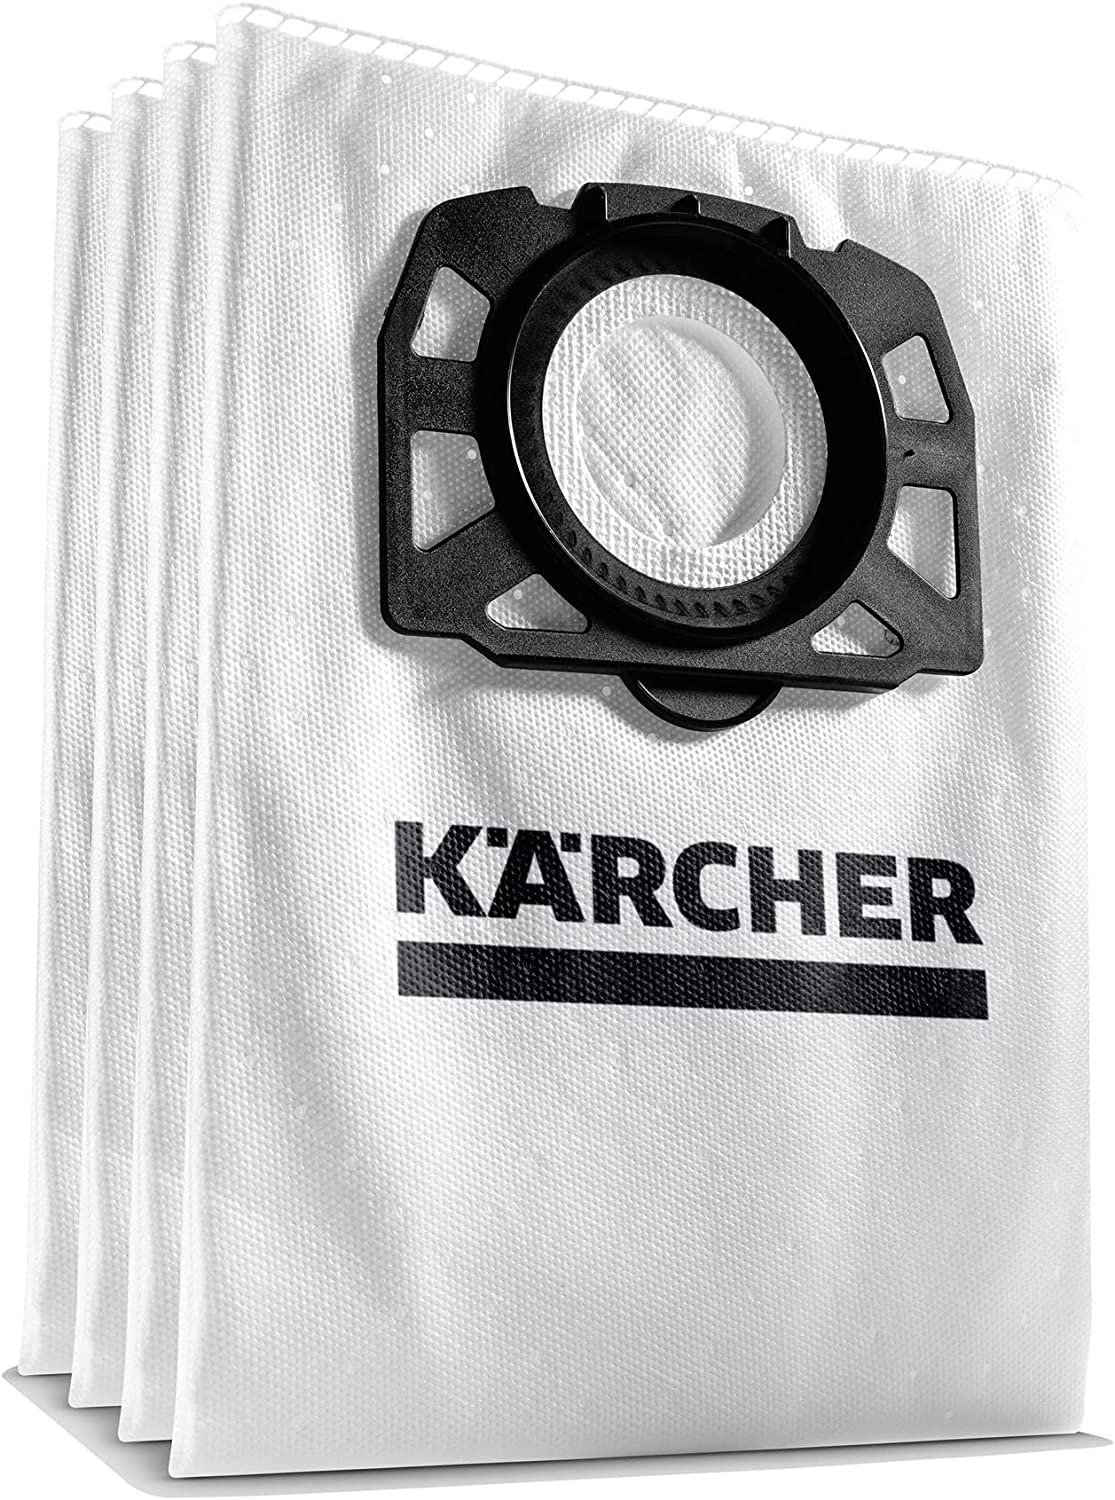 Sacchetti filtro in velo, 4 pezzi, per Aspirapolveri Karcher WD4, WD5, WD6